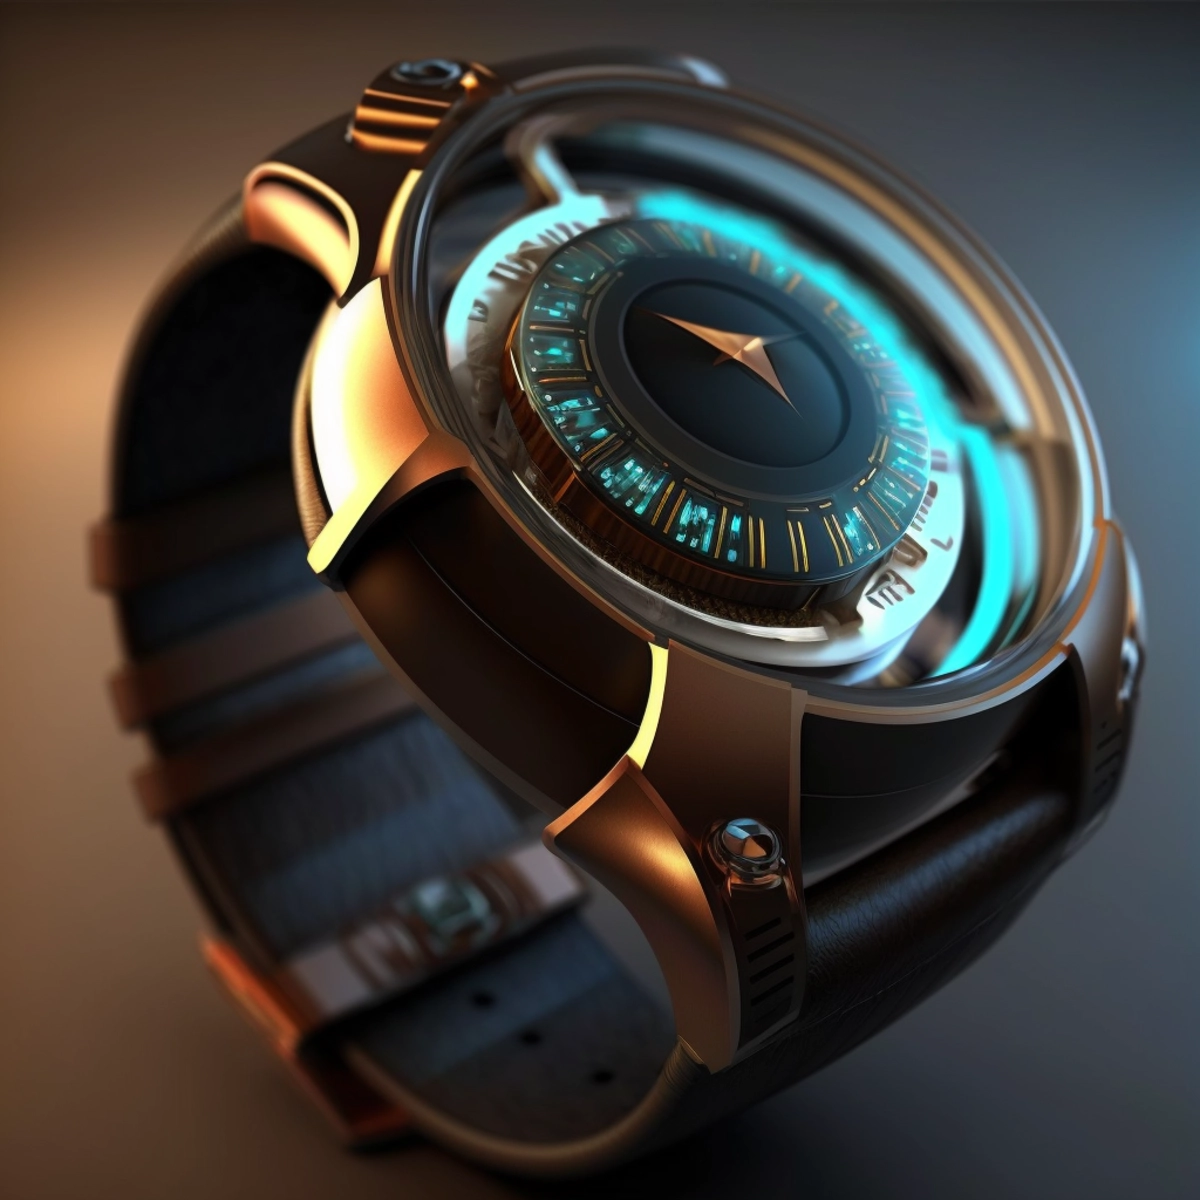 Un concept futuriste de smartwatch avec affichage holographique, alliant élégance et technologie de pointe